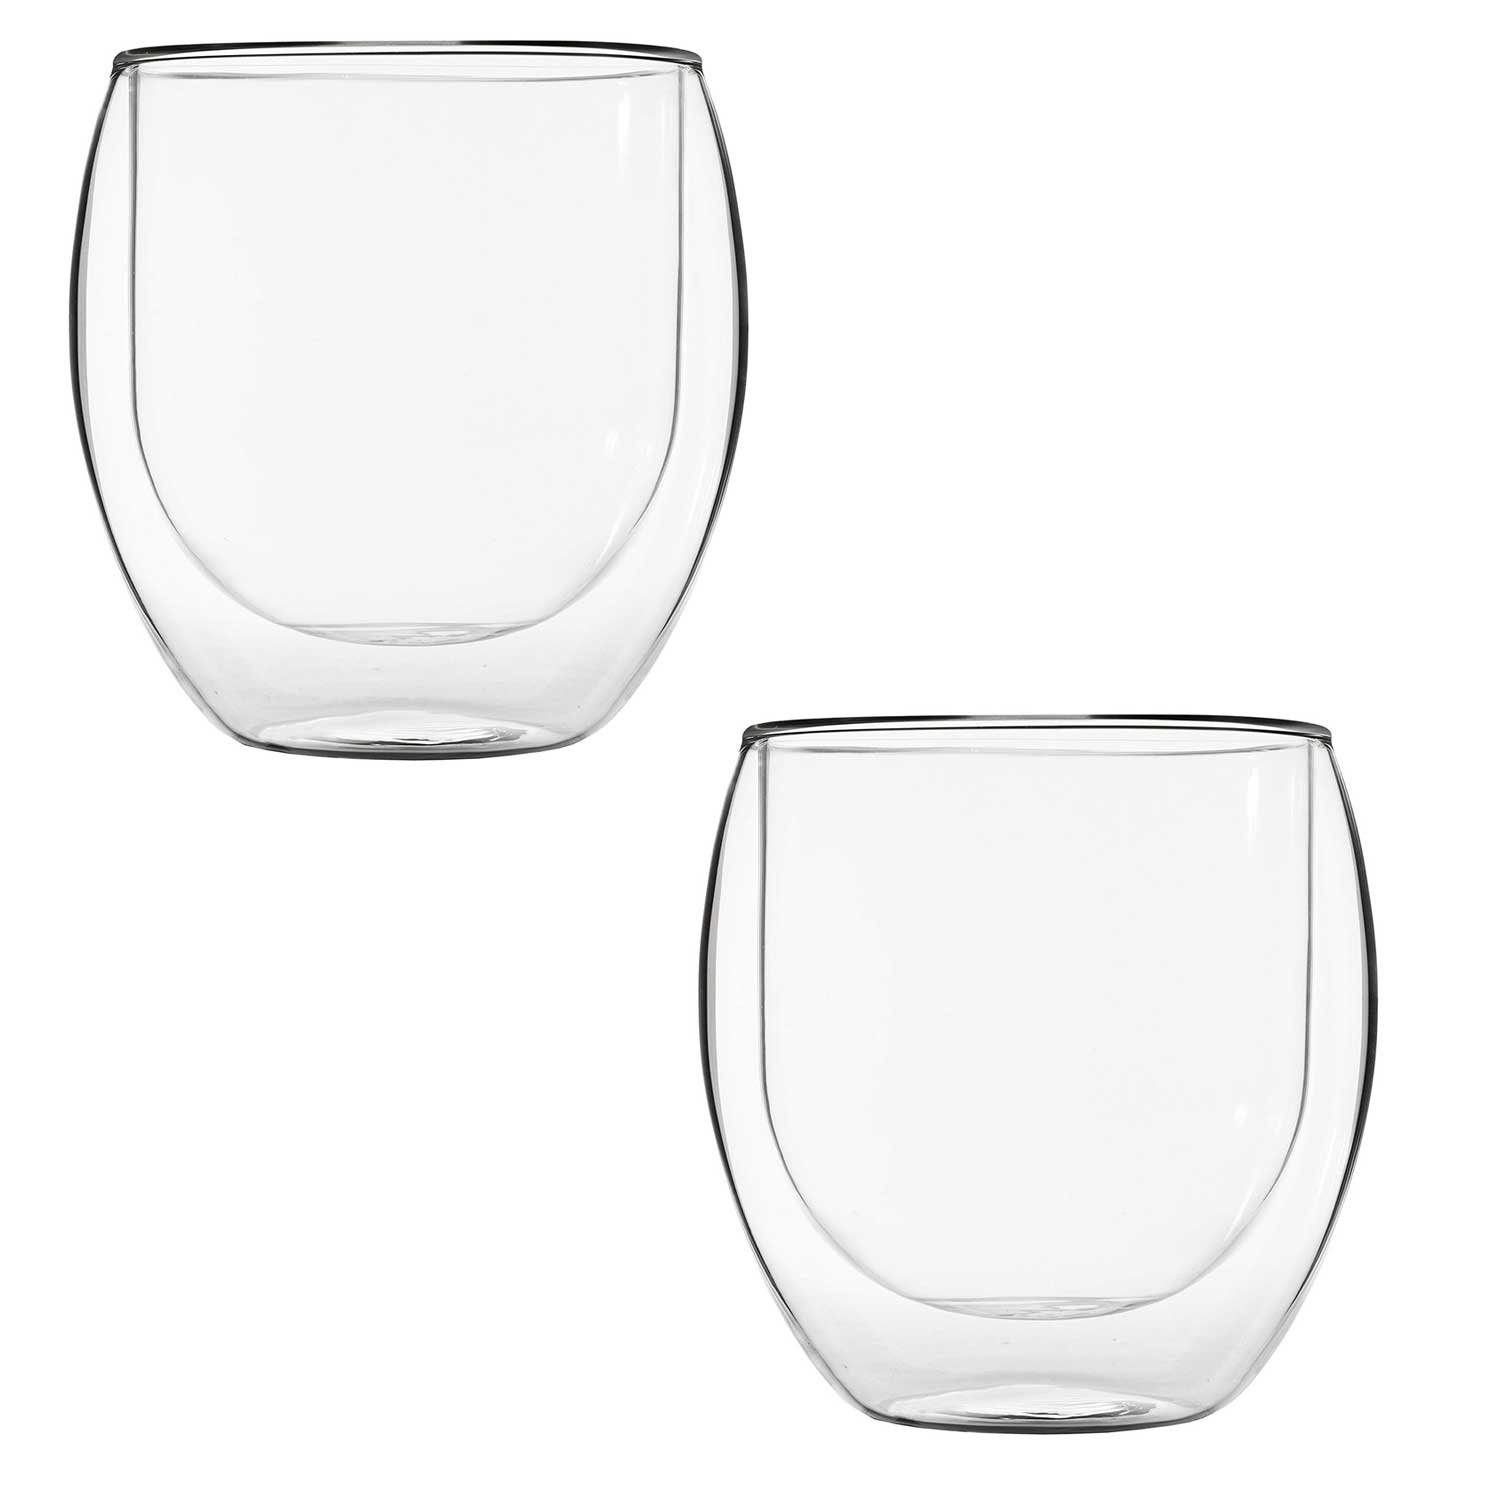 T24 Glas Gläser Set Doppelwandig 6 teilig Thermogläser-Set, 410 ml Wasserglas, Doppelwandiges Glas, Doppelwand, Für Heißgetränke geeignet, Spülmaschinenfest